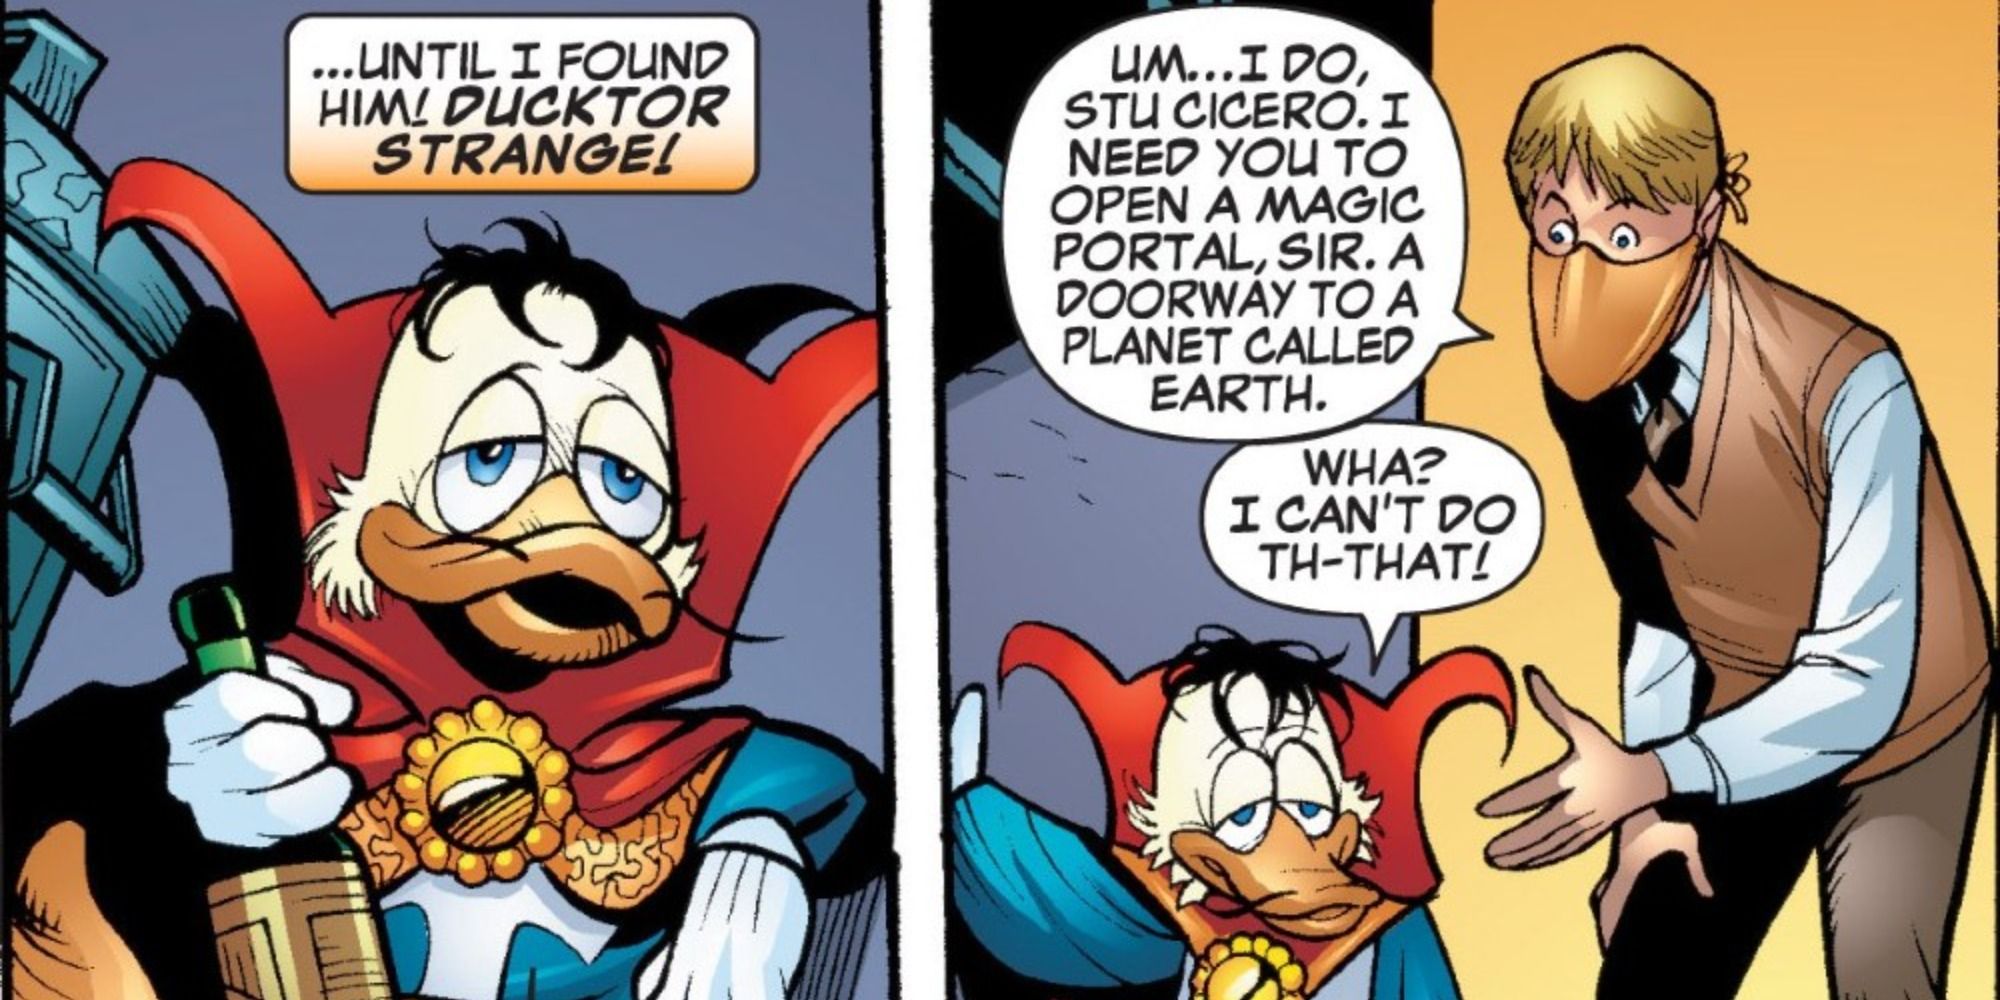 Ducktor Strange appears in Marvel Comics.